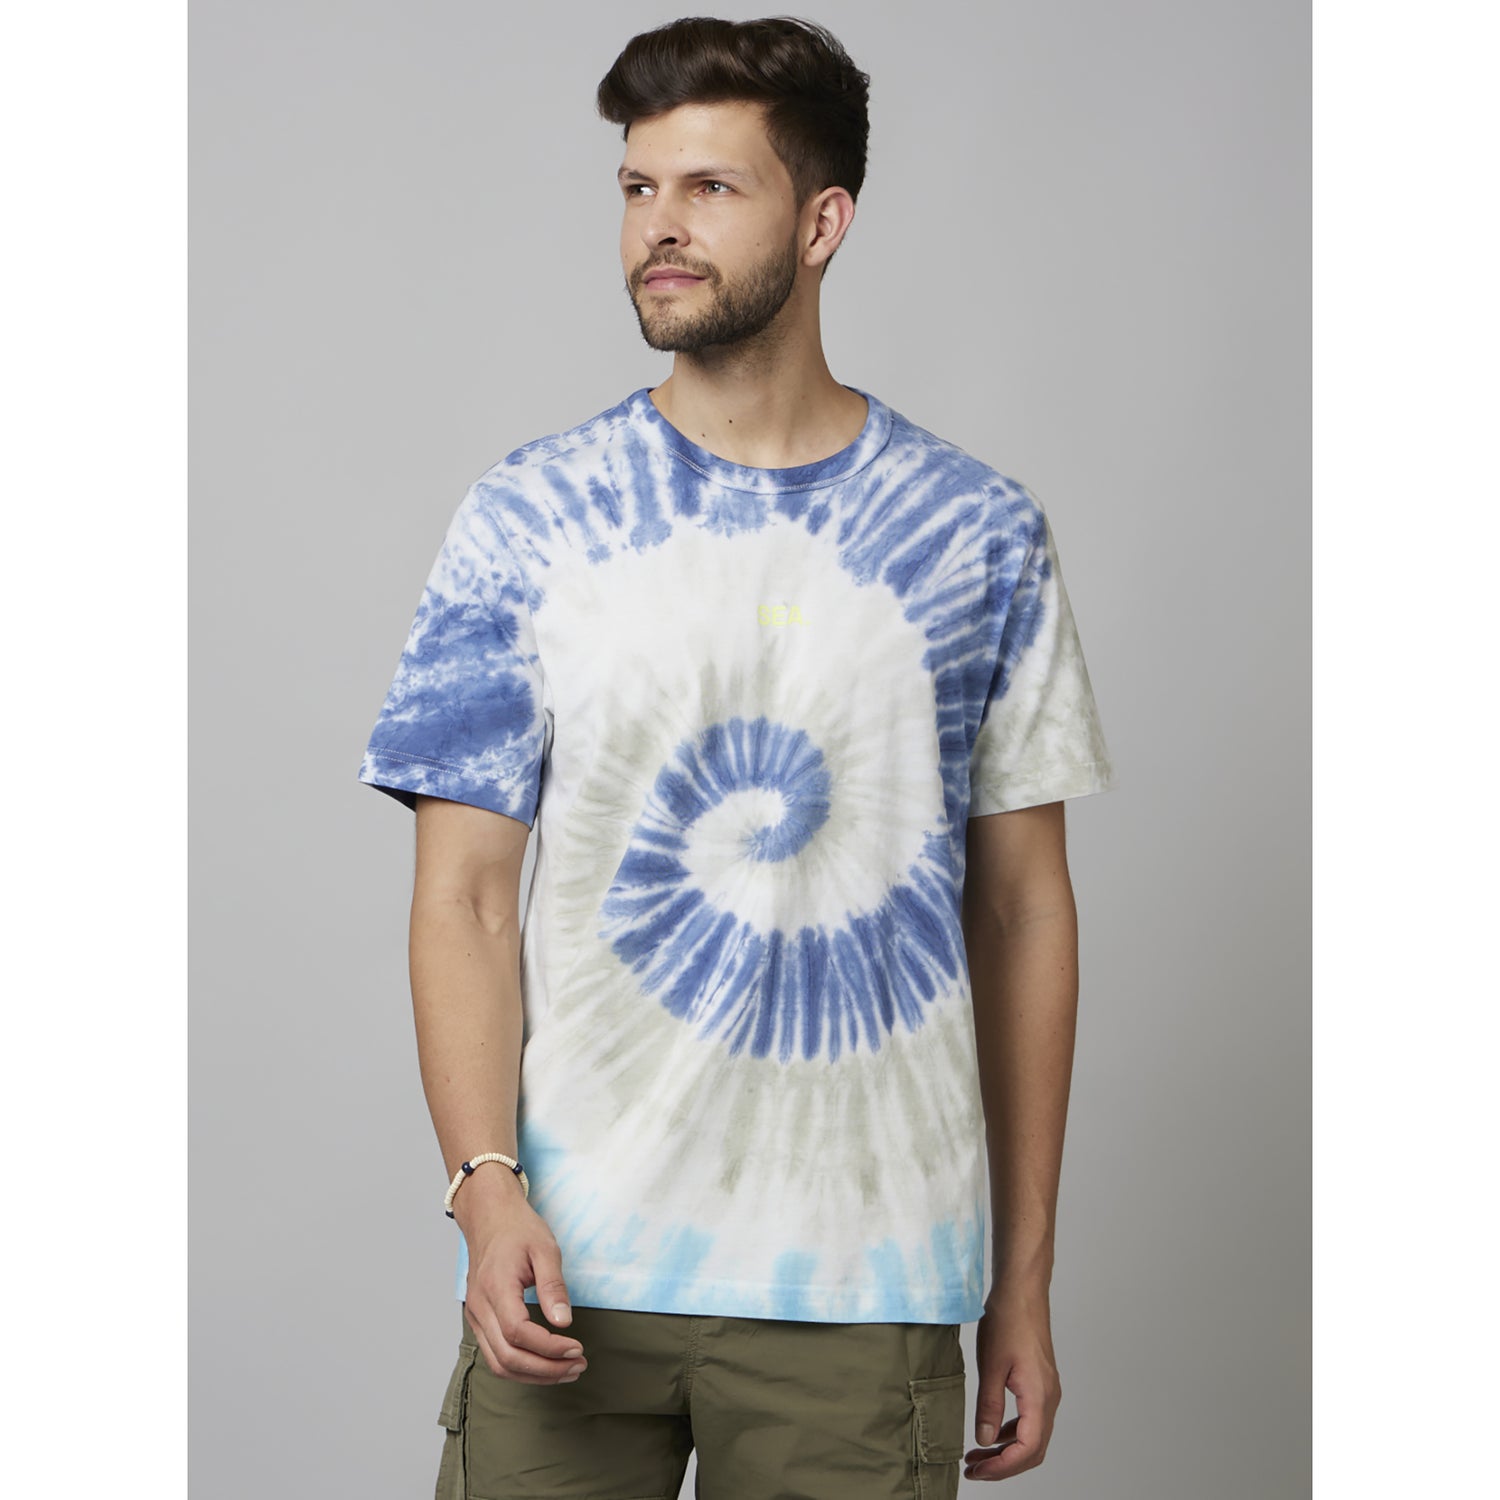 Blue Tie Dye Half Sleeve Cotton T-Shirts (FENAITRE)